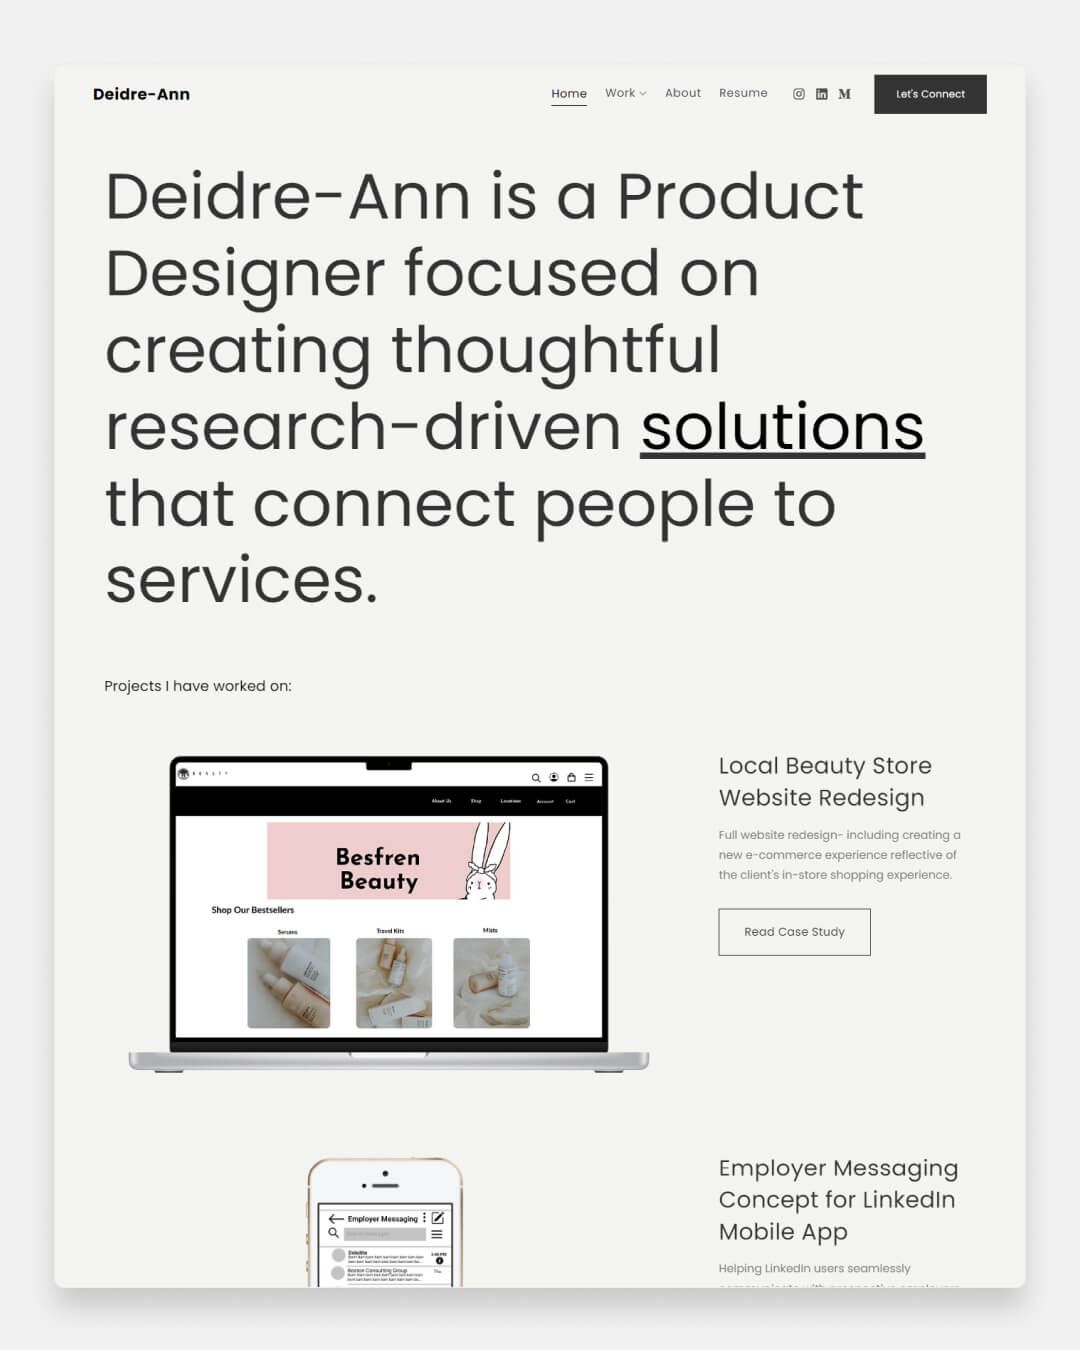 Diedre Ann - portfólio de designer de produto Site